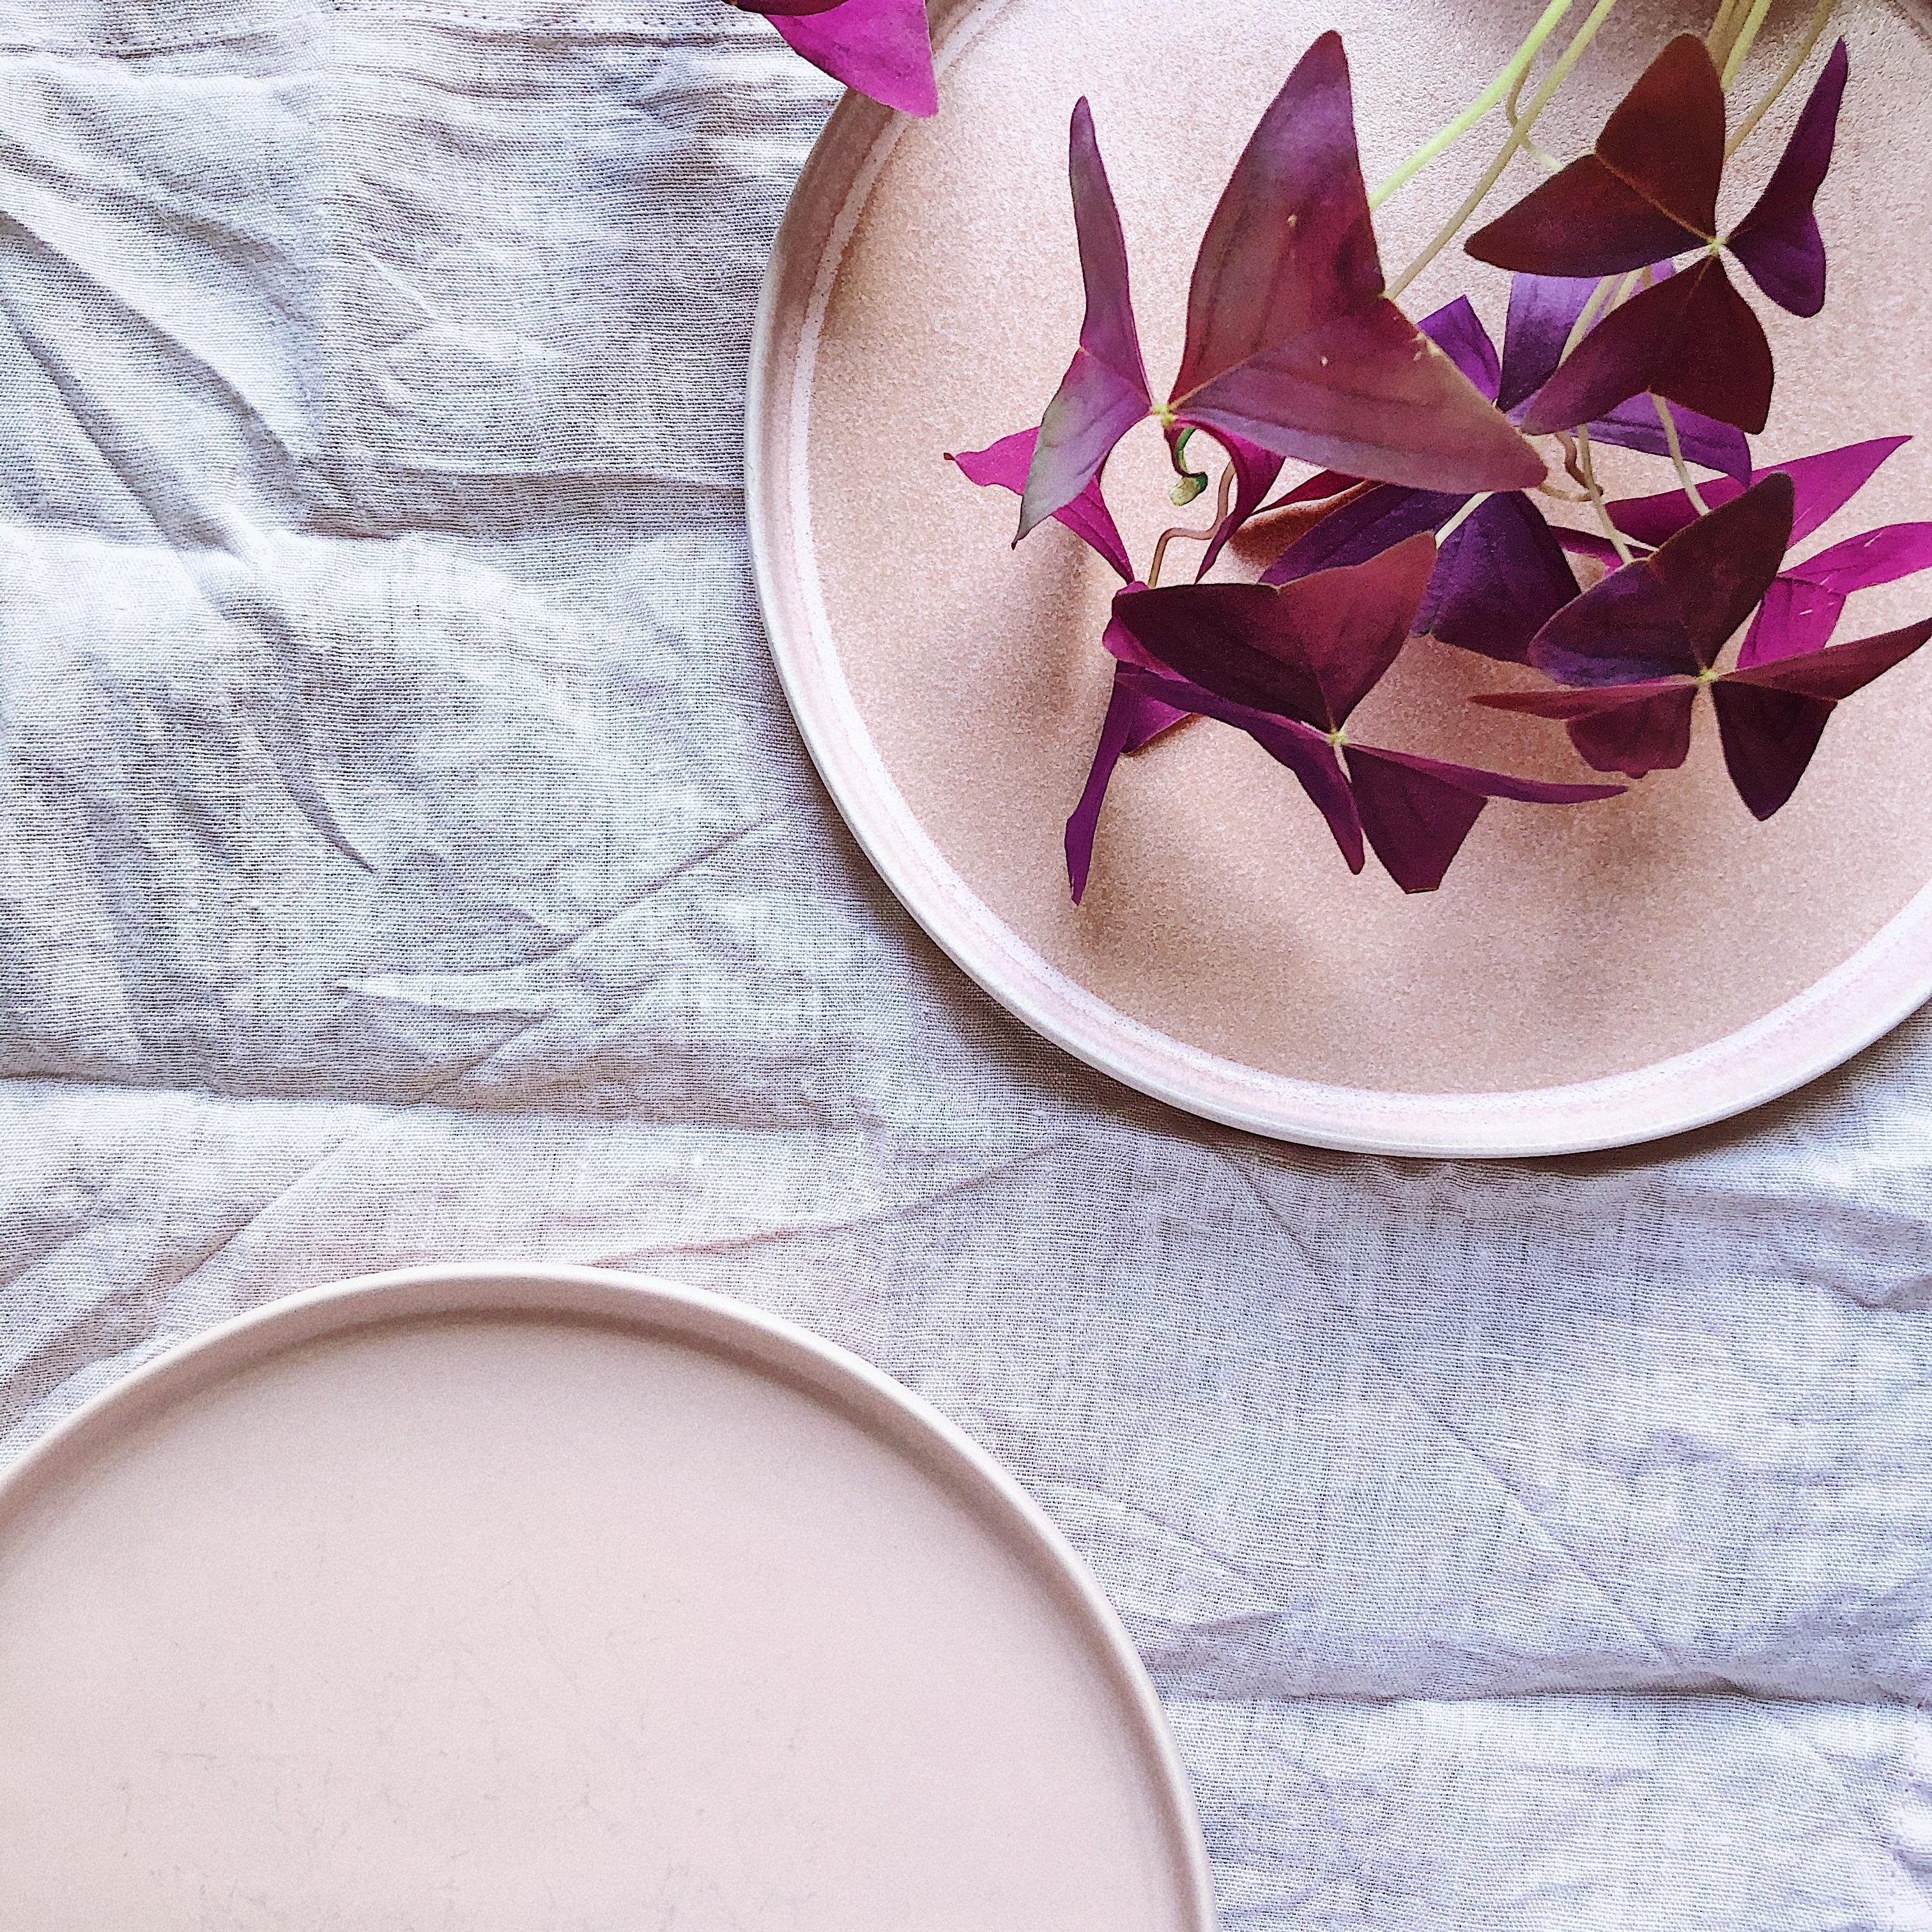 Rosa Träumchen 💗
#Keramik #Geschirr #Glücksklee 
